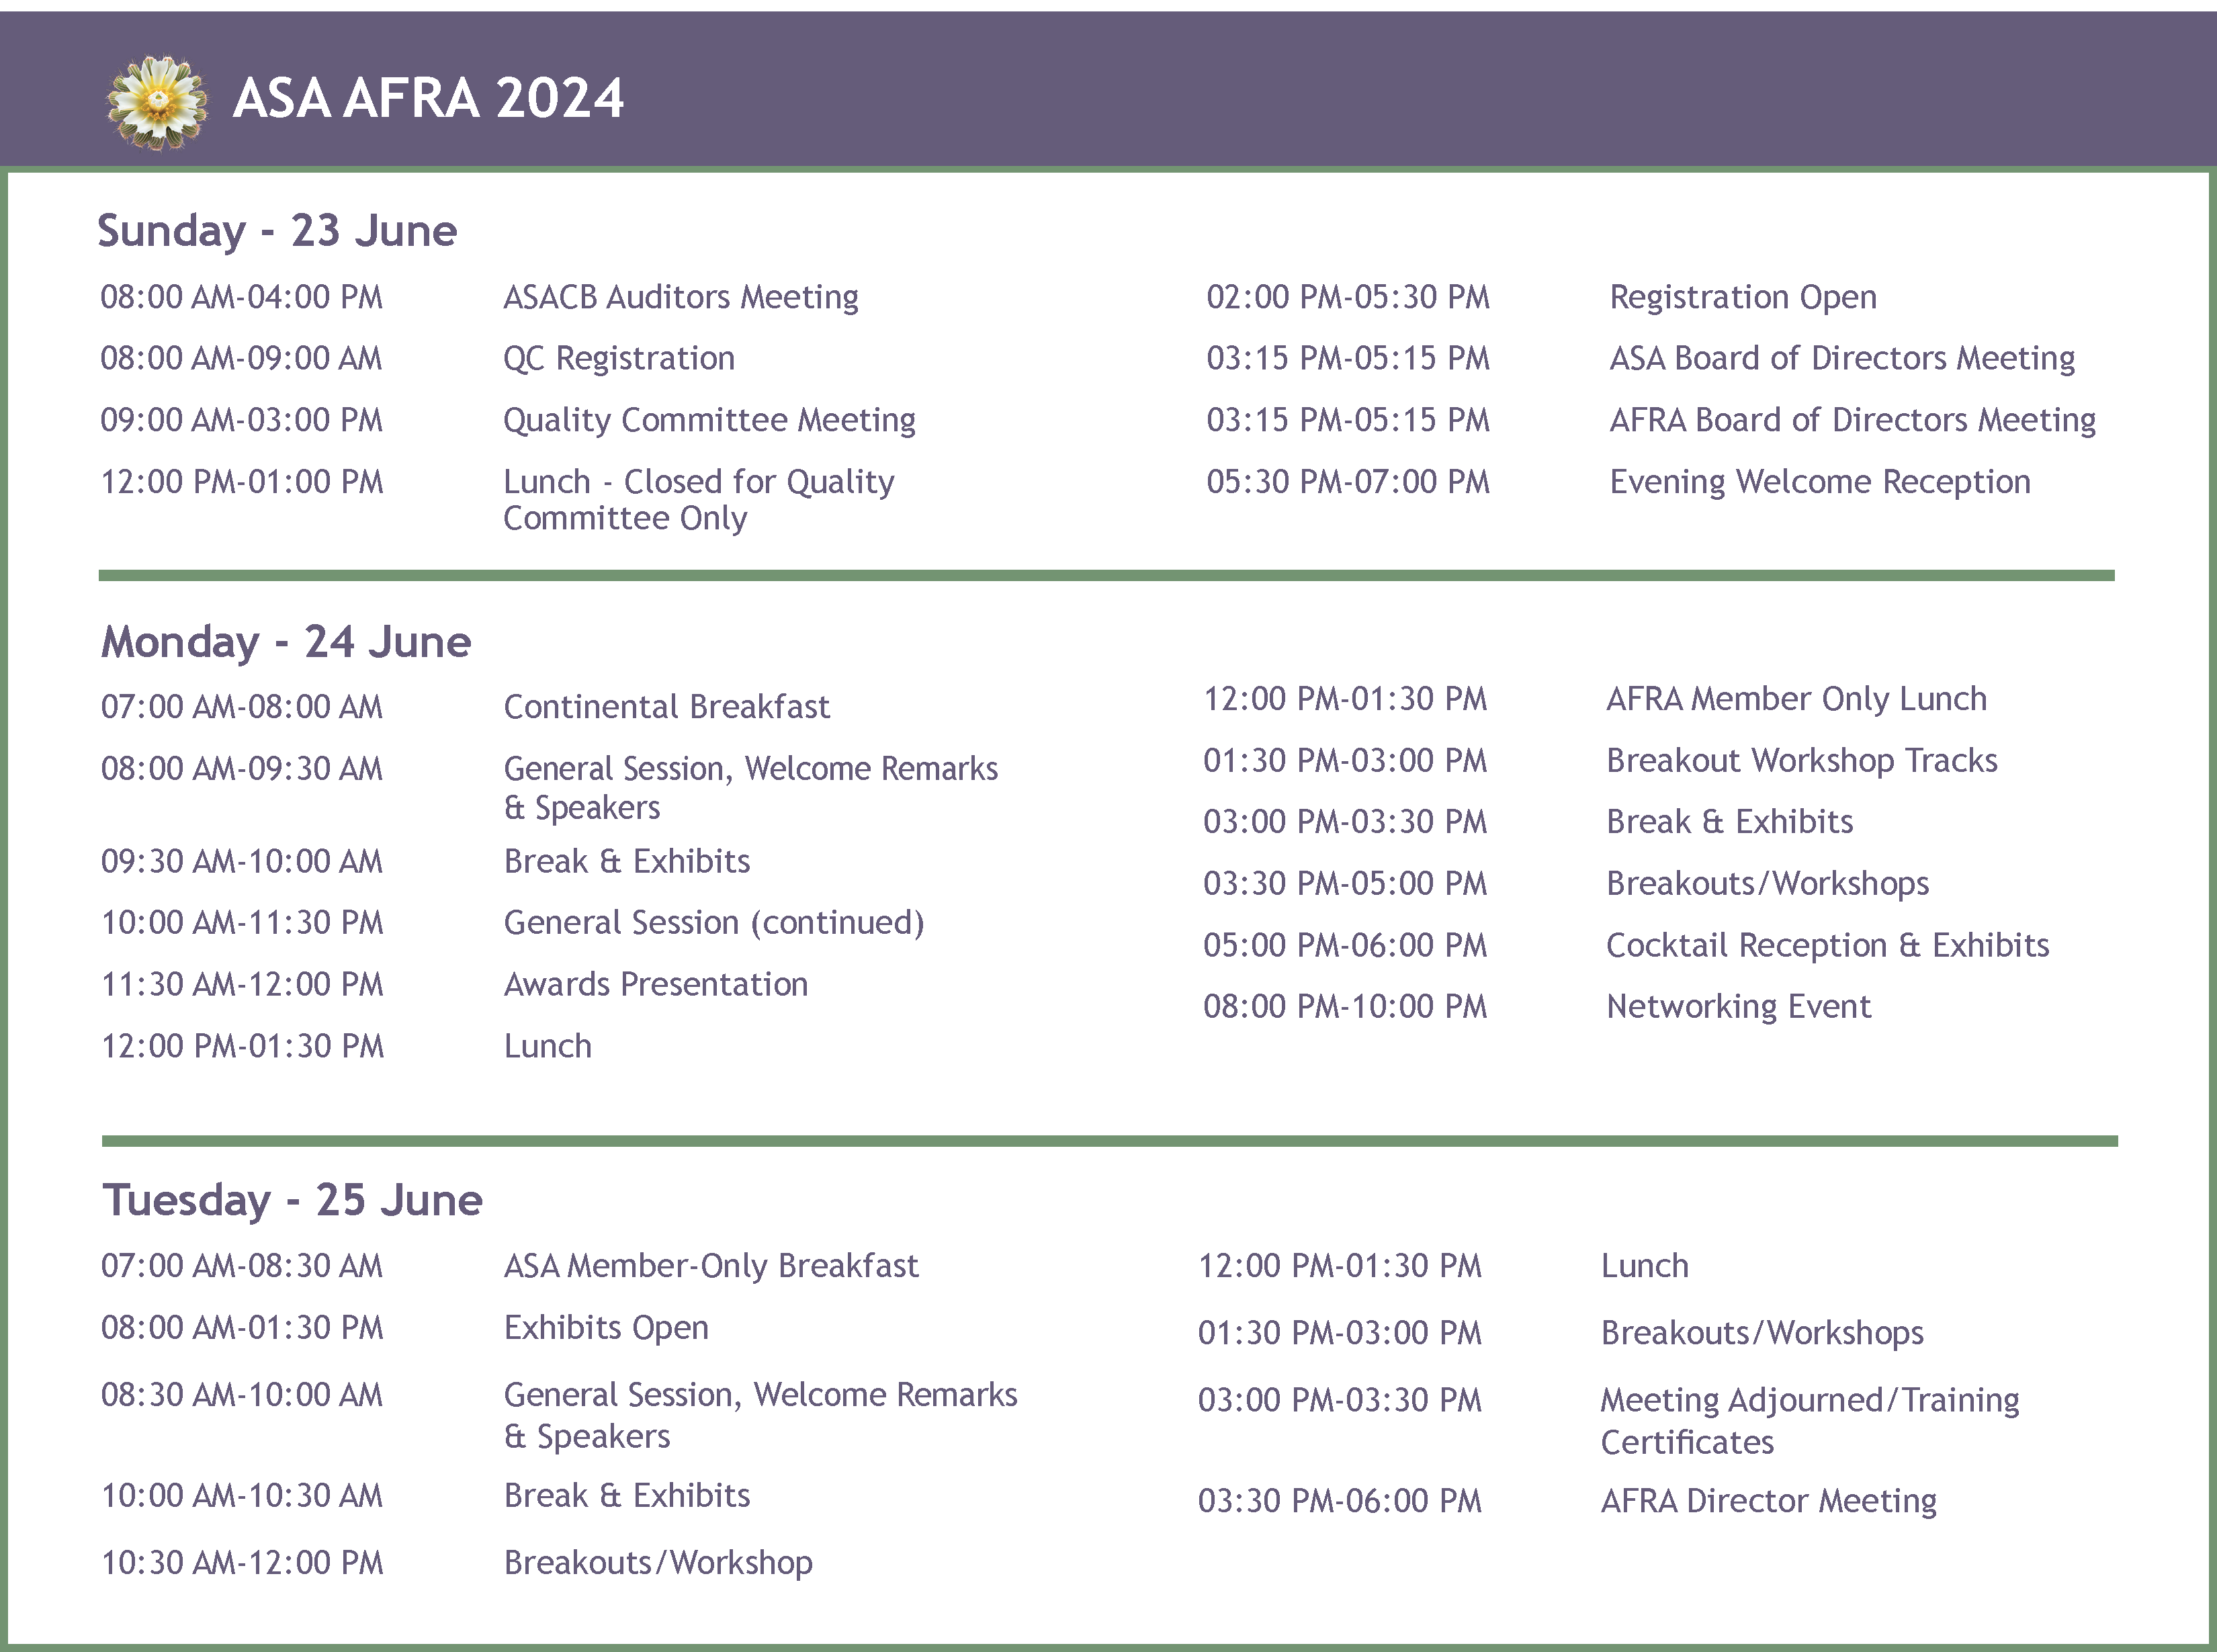 ASA AFRA Conference